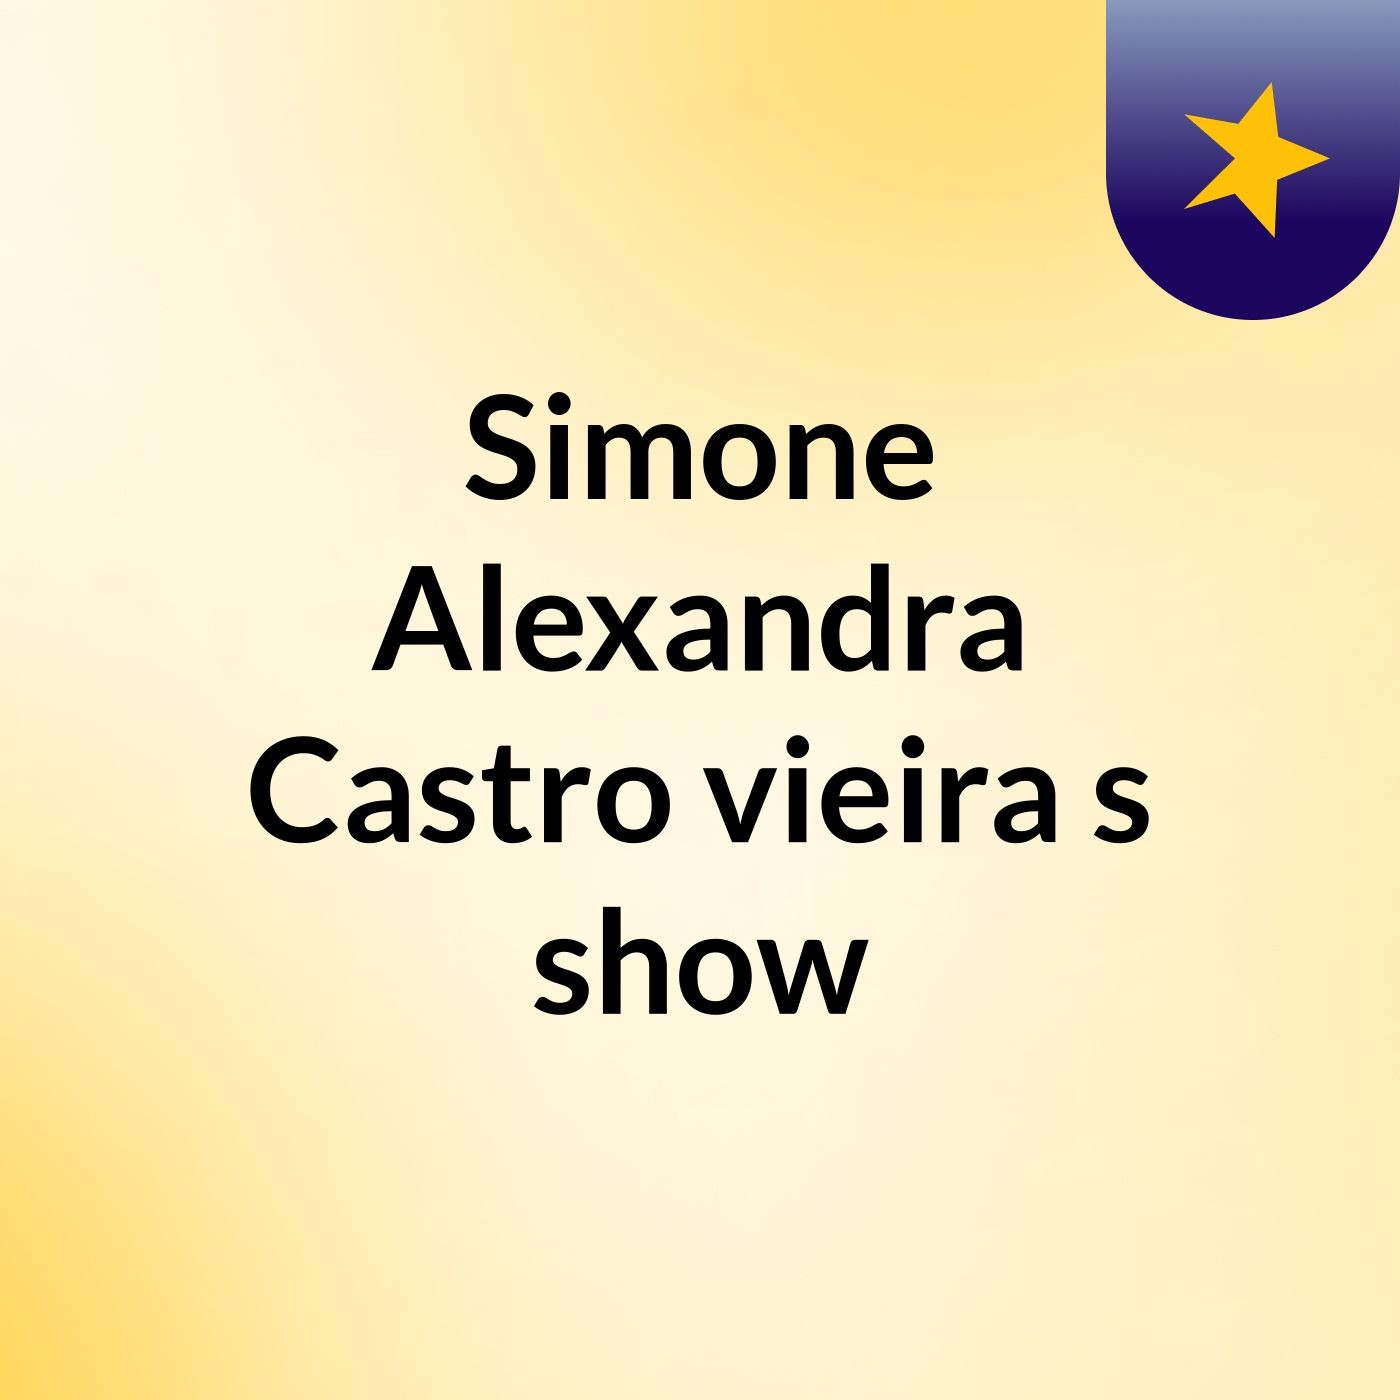 Simone Alexandra Castro vieira's show